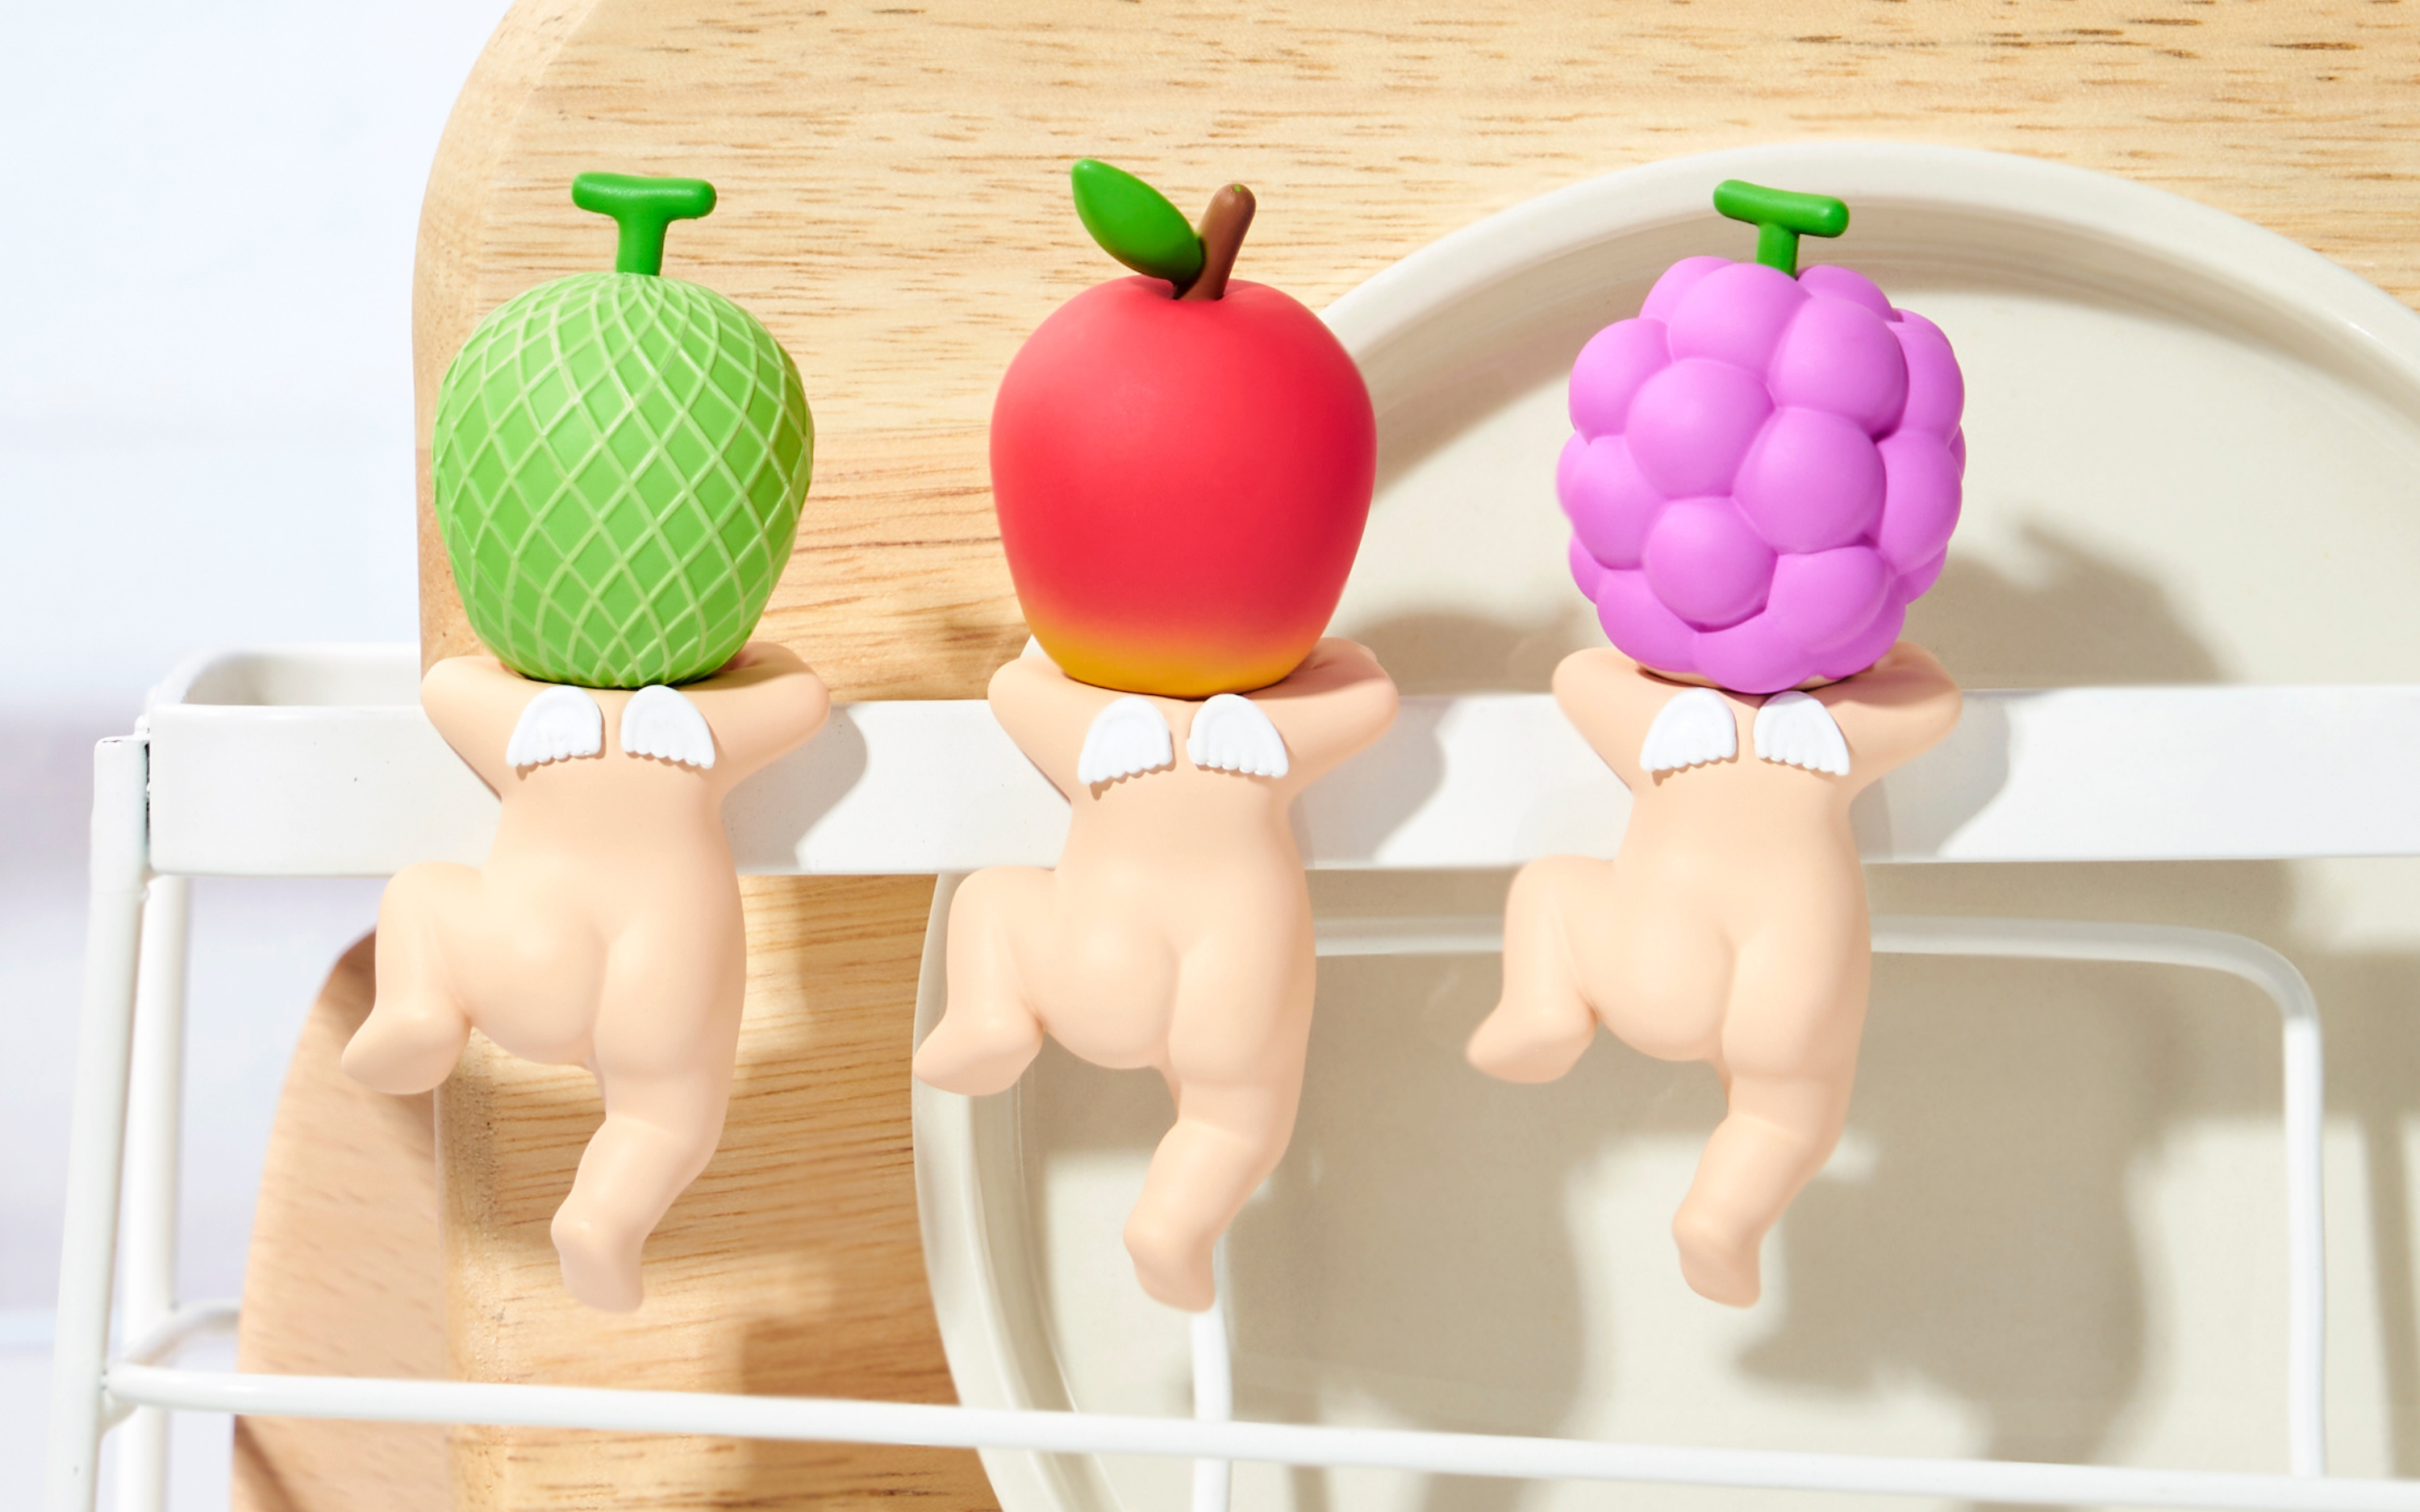 Sonny Angel Drop Angel Harvest Series Fruit Blind Box [Genuine] Doll Cute  Figures